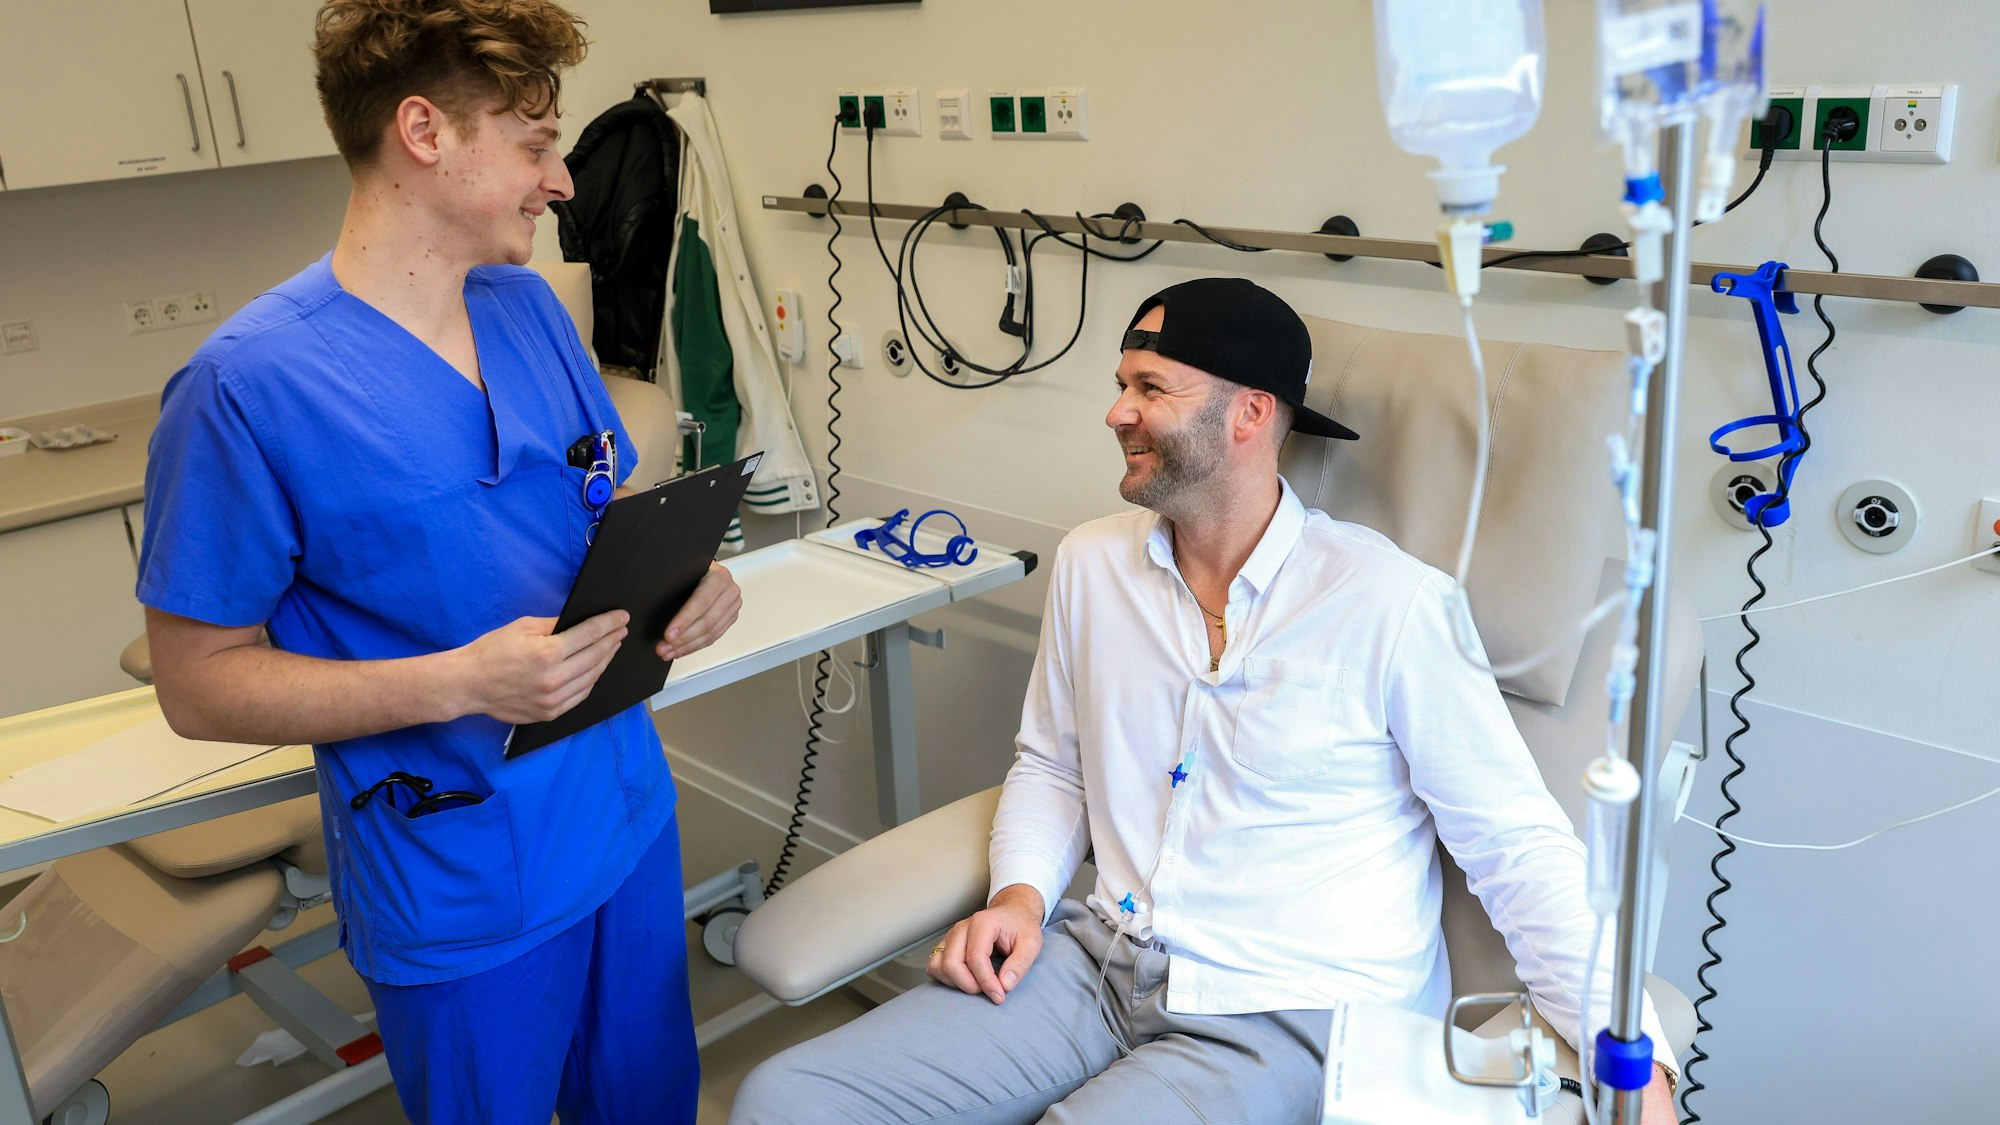 André Schreiber lässt seinen Lungenkrebs mit einer neuartigen Tumortherapie in der Uniklinik Köln behandeln.
Im Bild auch der behandelnde Arzt Dr. Felix John.